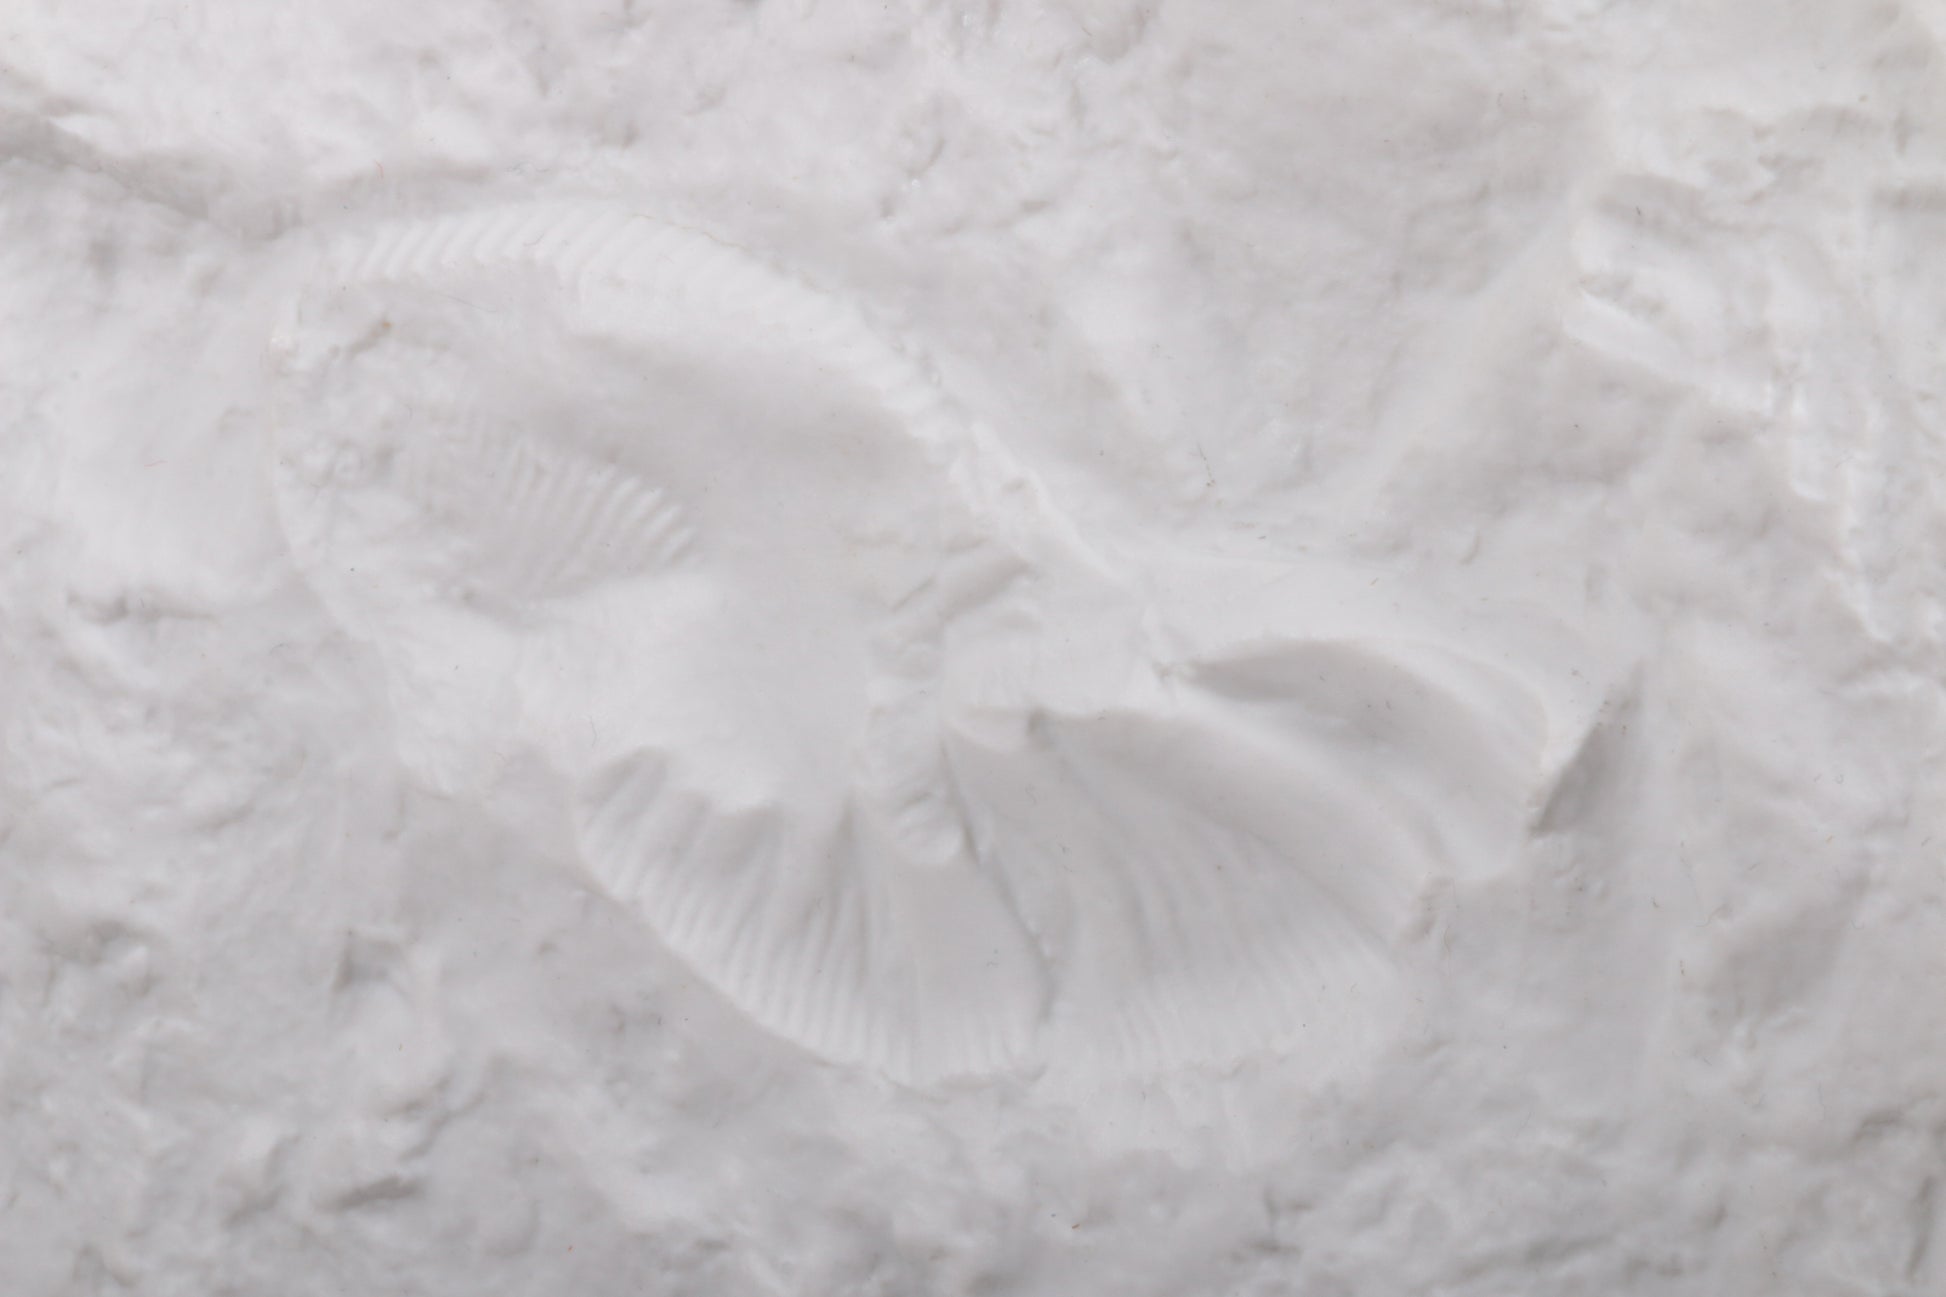 Grote AK Kaiser porseleinen vaas, witte ammoniet schelp fossiel patroon.